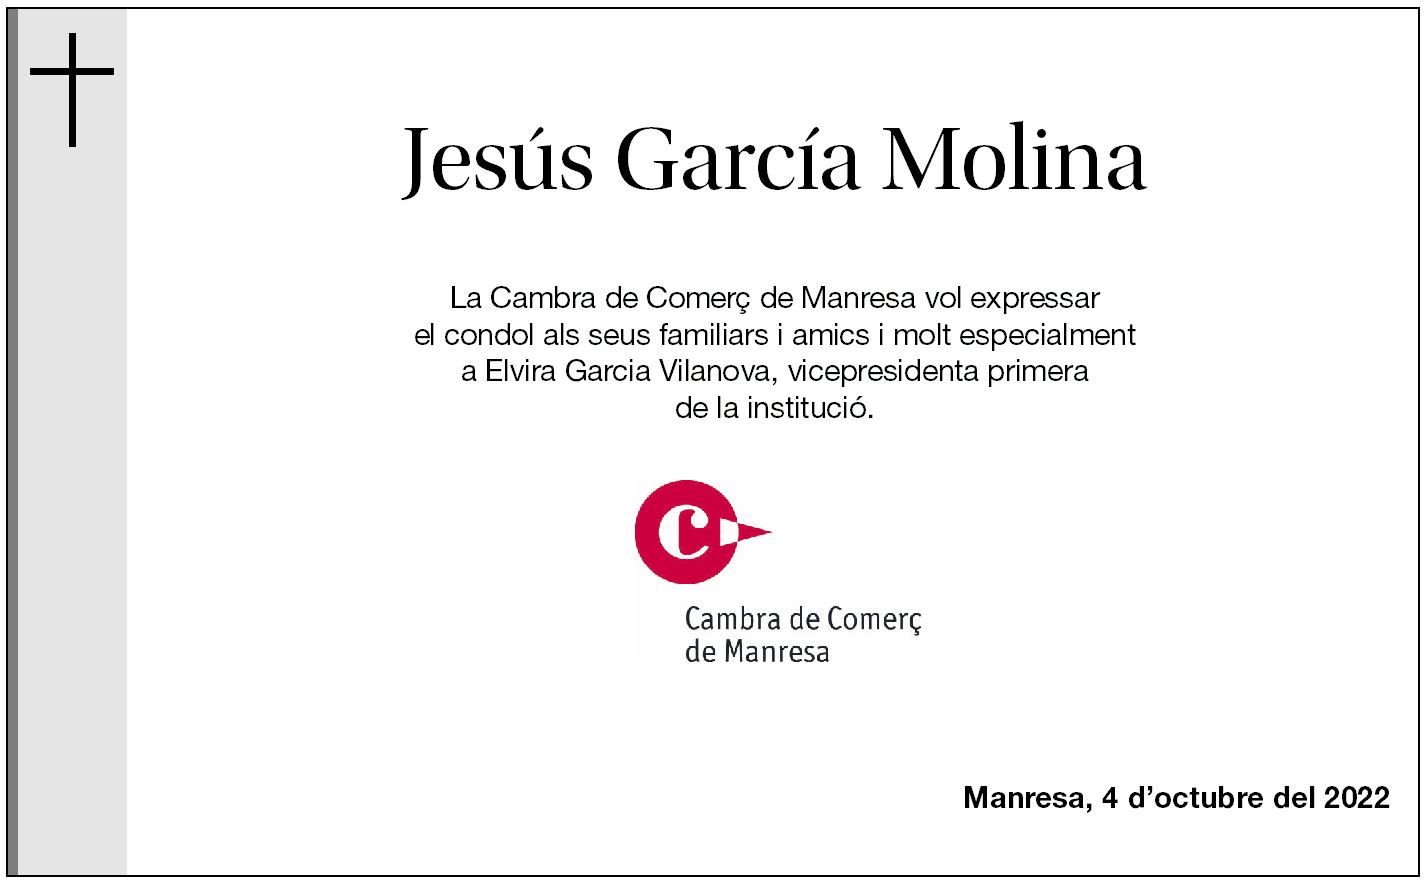 Jesús García Molina